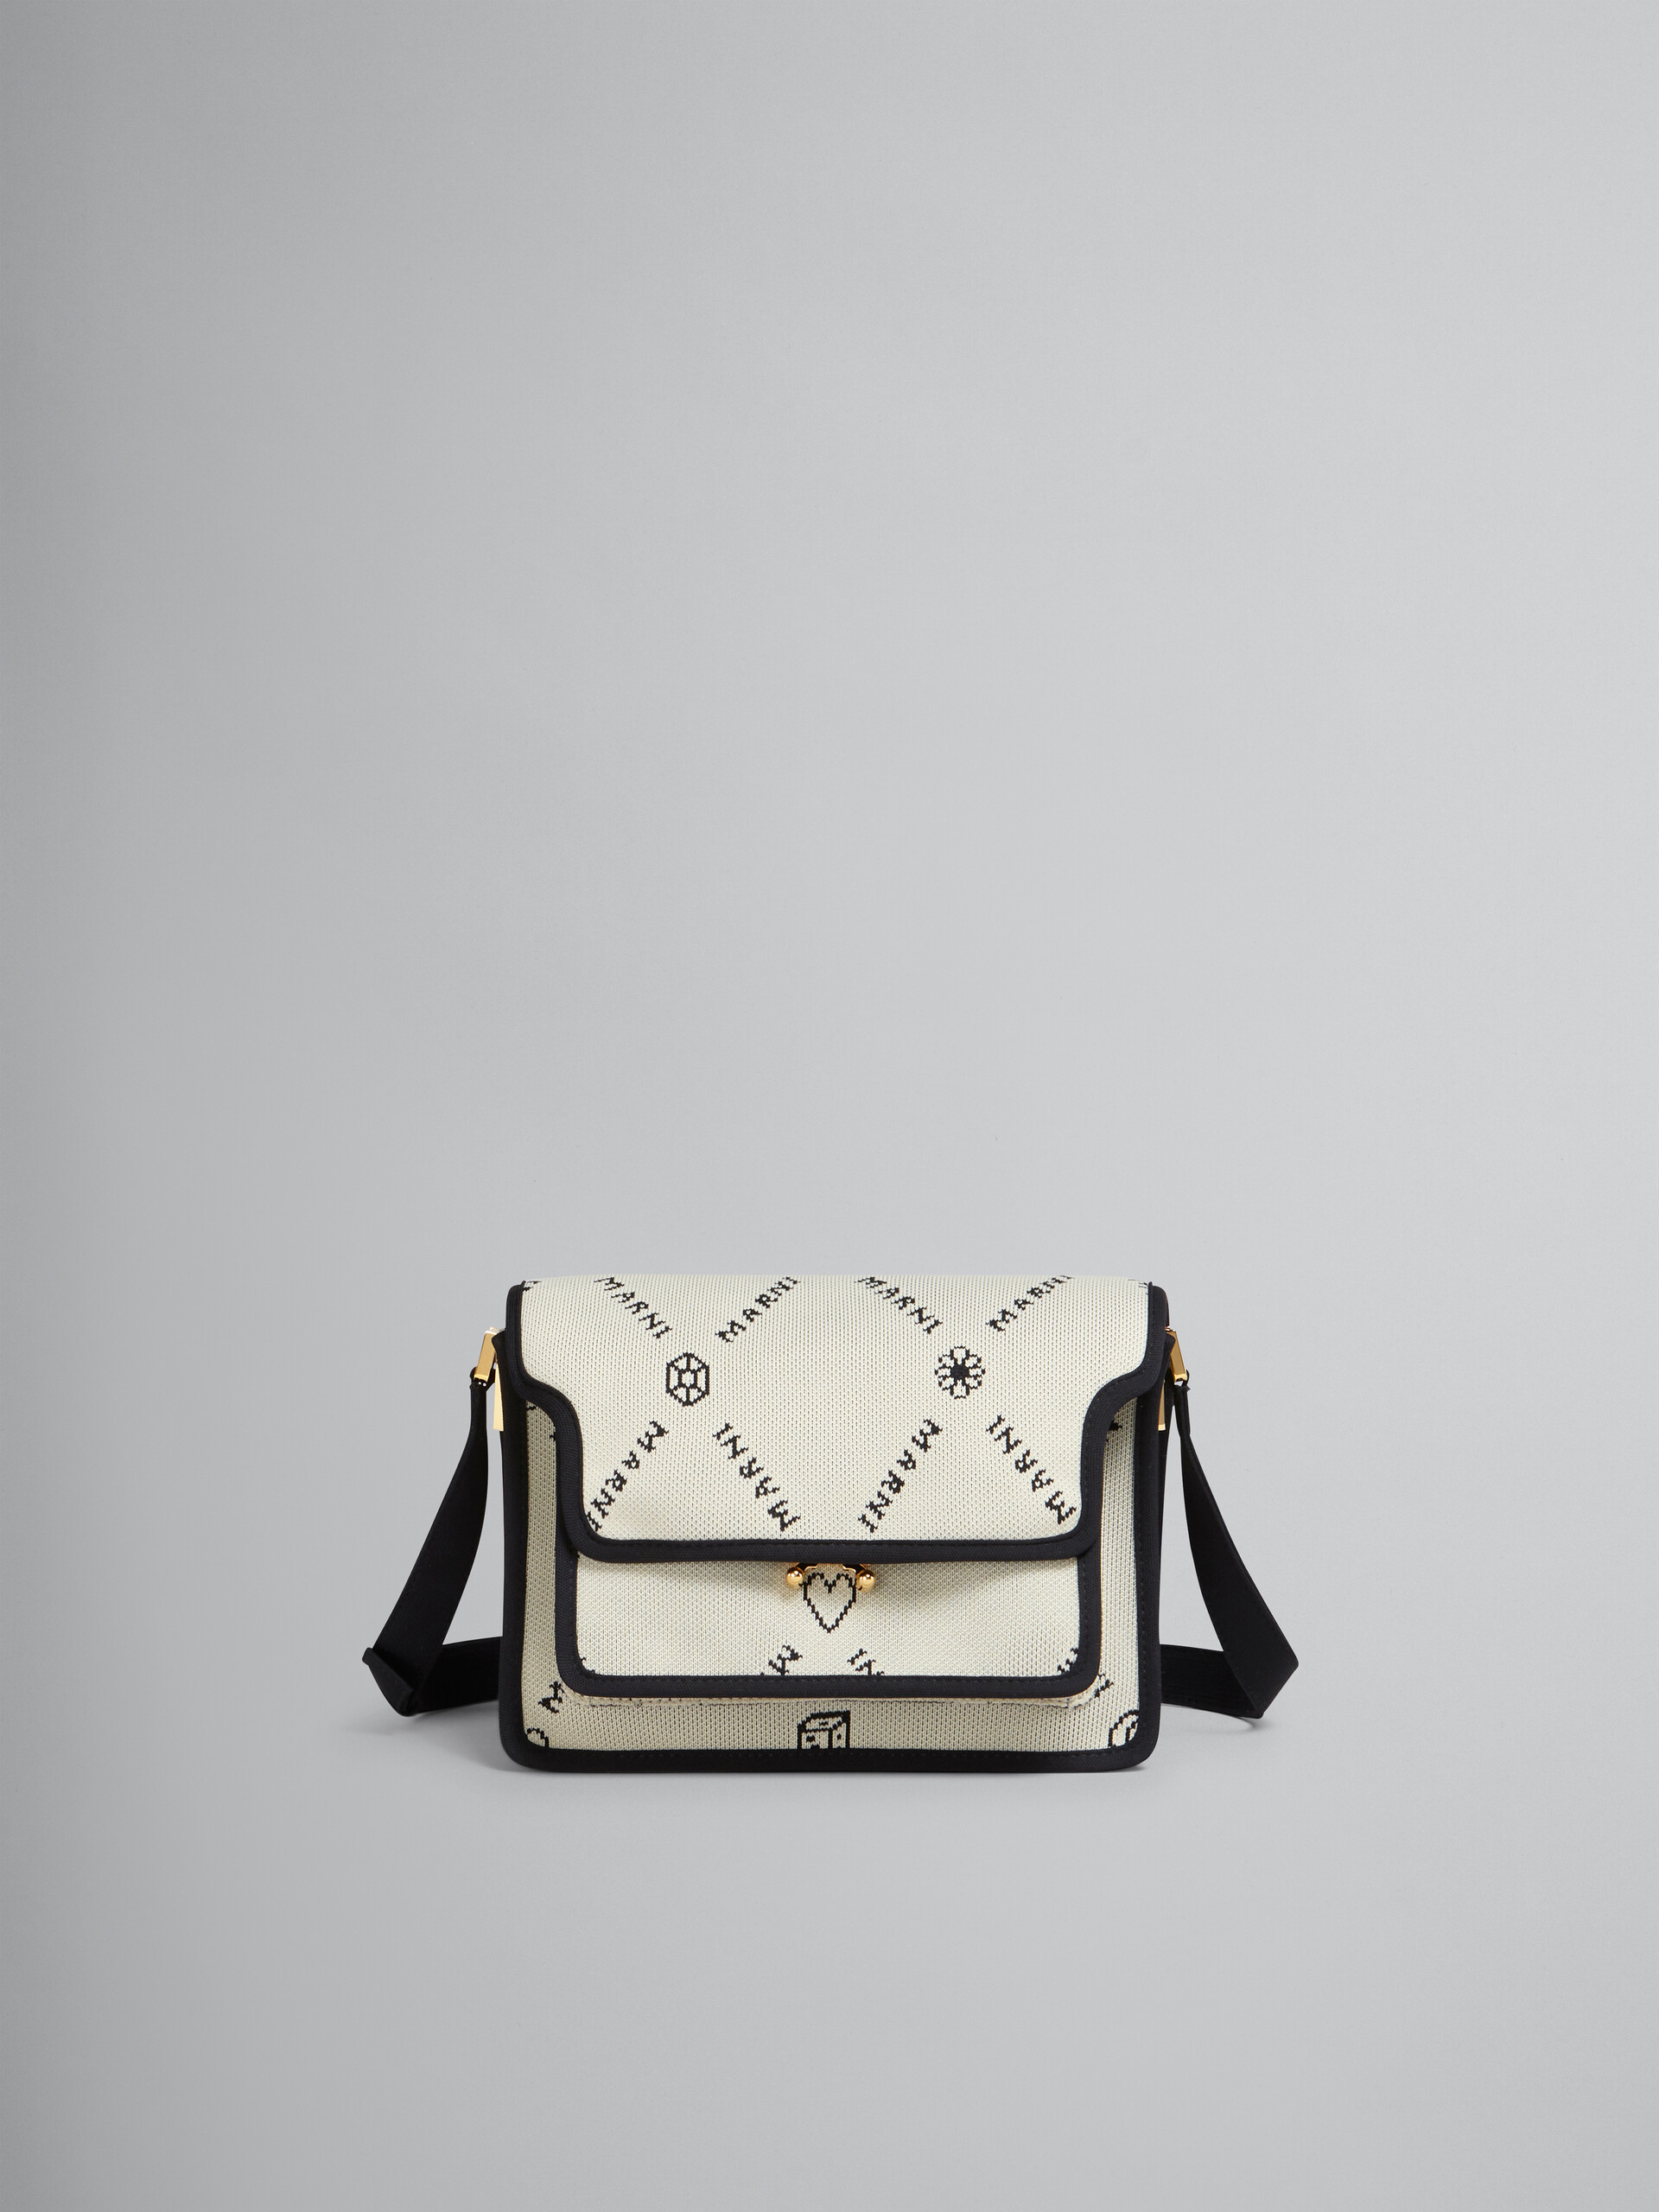 TRUNK SOFT medium bag in white Marnigram jacquard - Shoulder Bag - Image 1